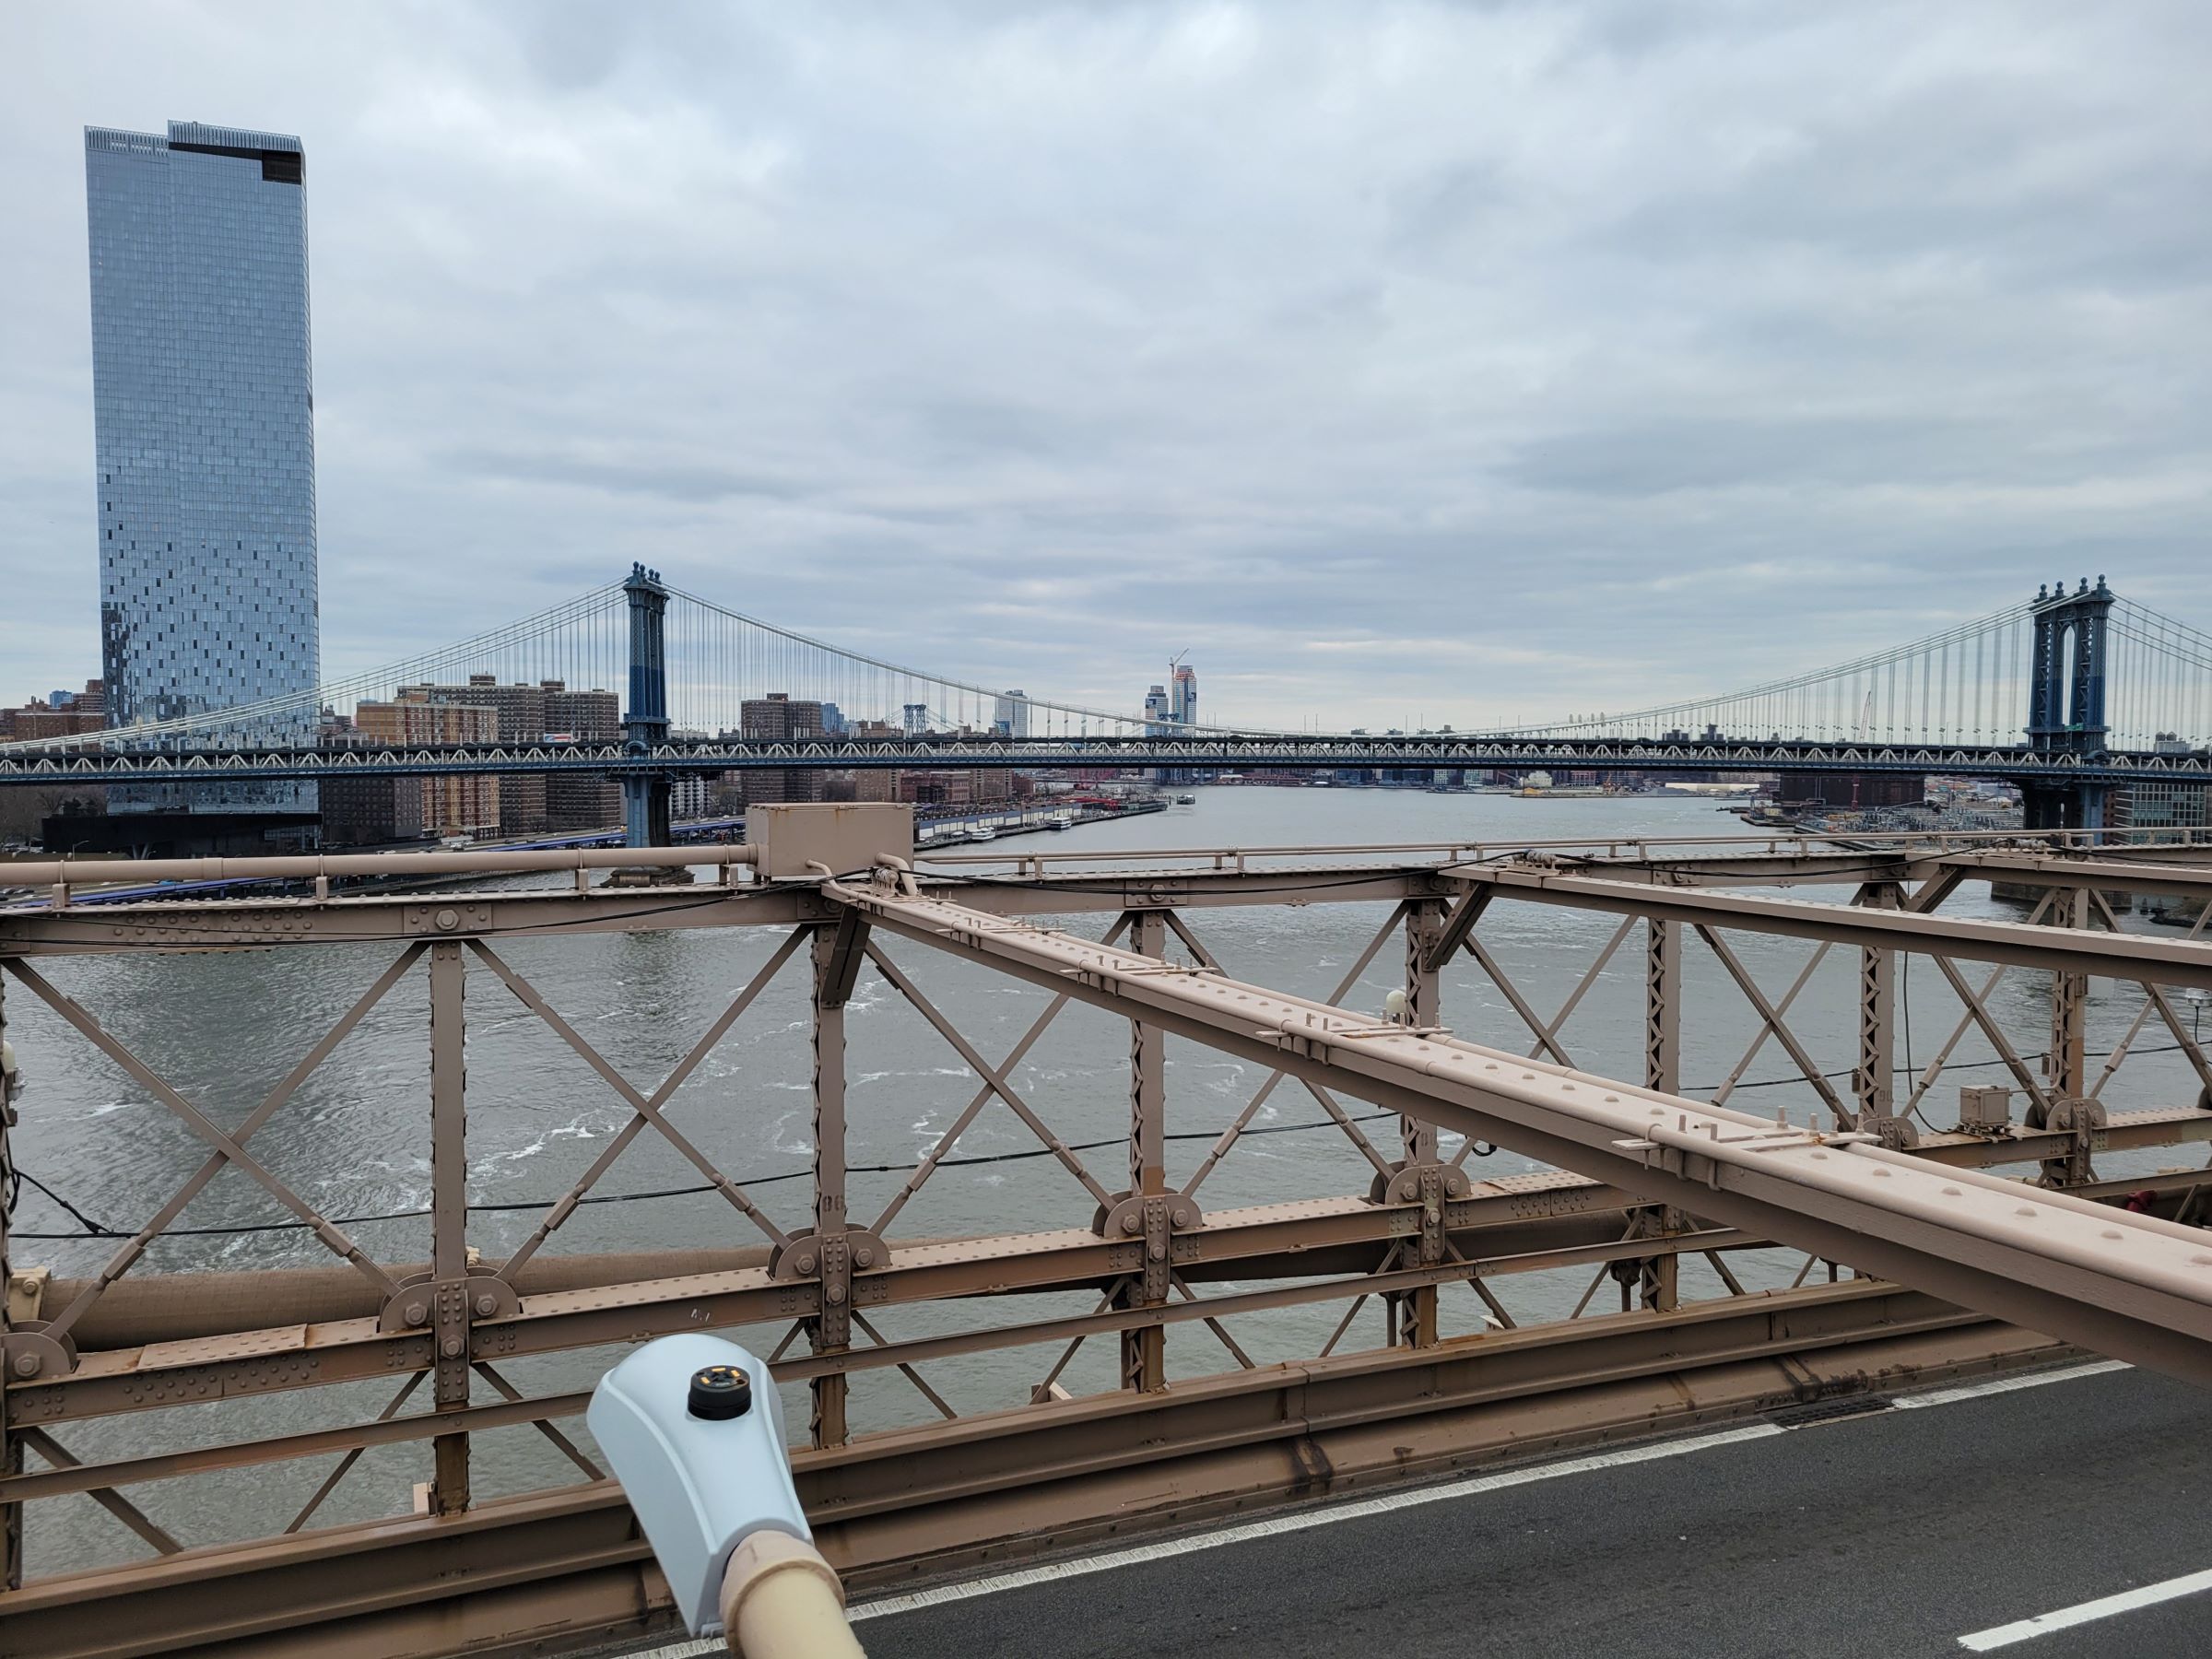 브루클린브리지(Brooklyn Bridge)를 걸어본 후에 차이나타운에서 저녁식사와 리틀이태리에서 디저트를